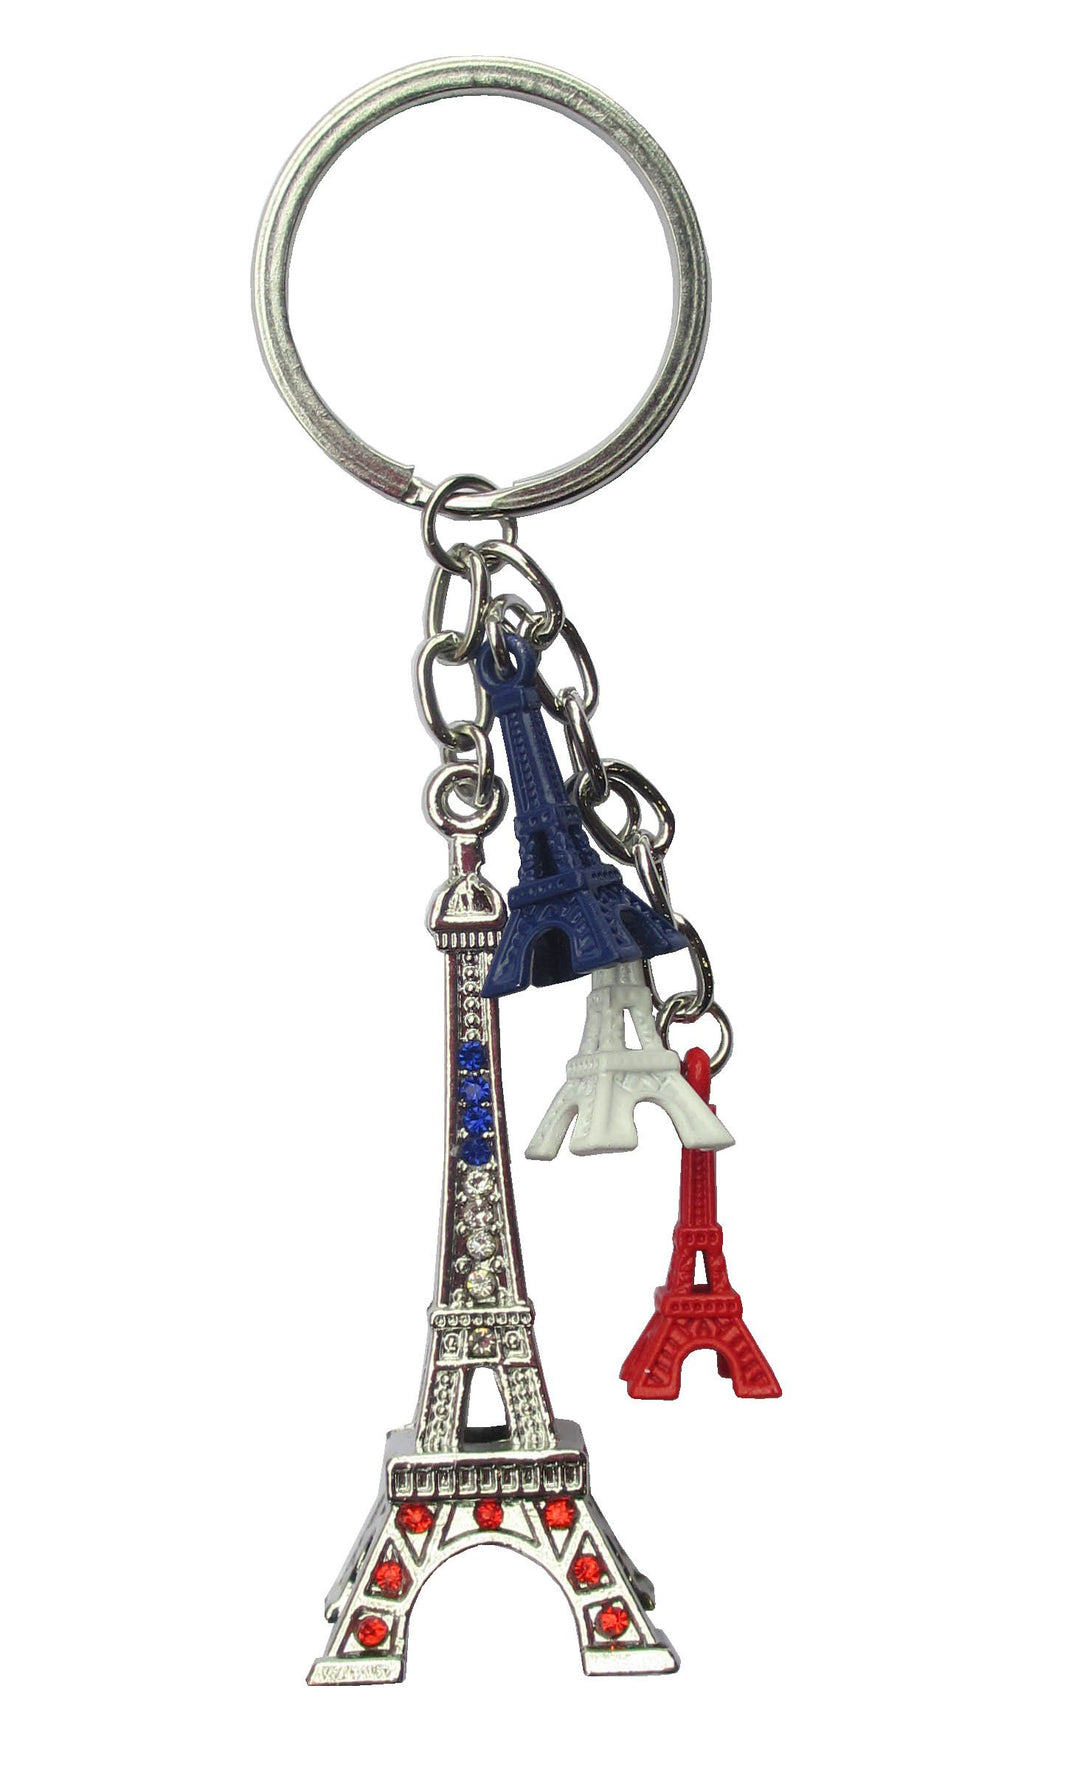 Découvrez également notre Porte-clés Tour Eiffel Rouge pour une autre variante colorée.